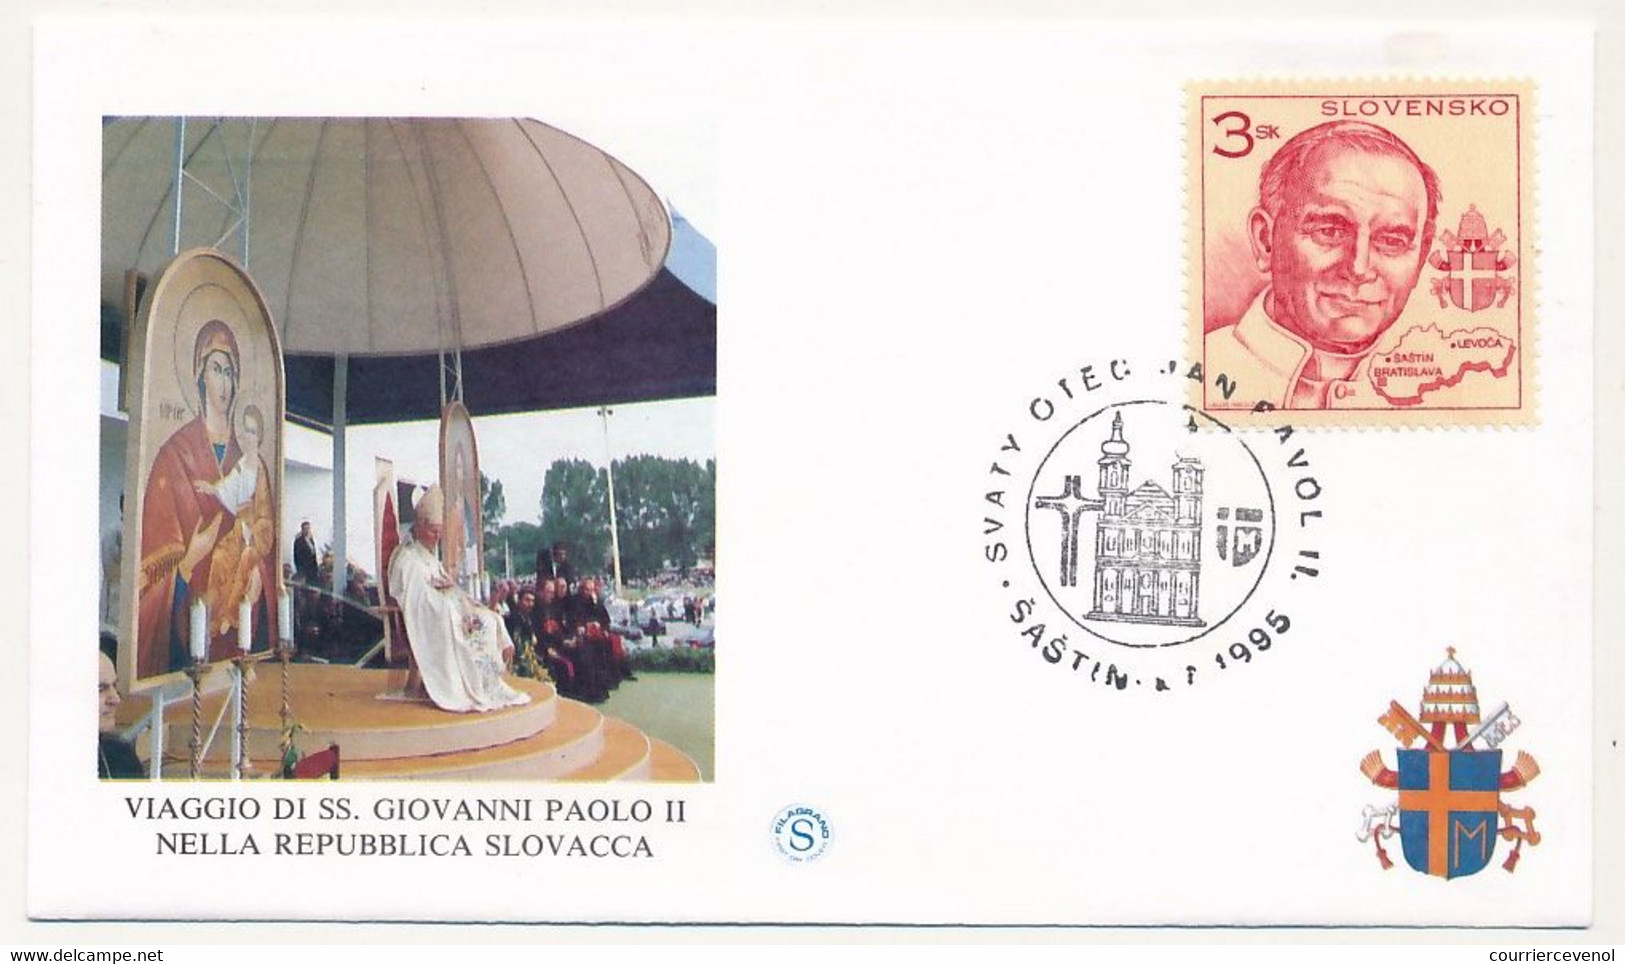 SLOVAQUIE - 9 enveloppes illustrées - Voyage du Pape Jean Paul II en Slovaquie - 1995